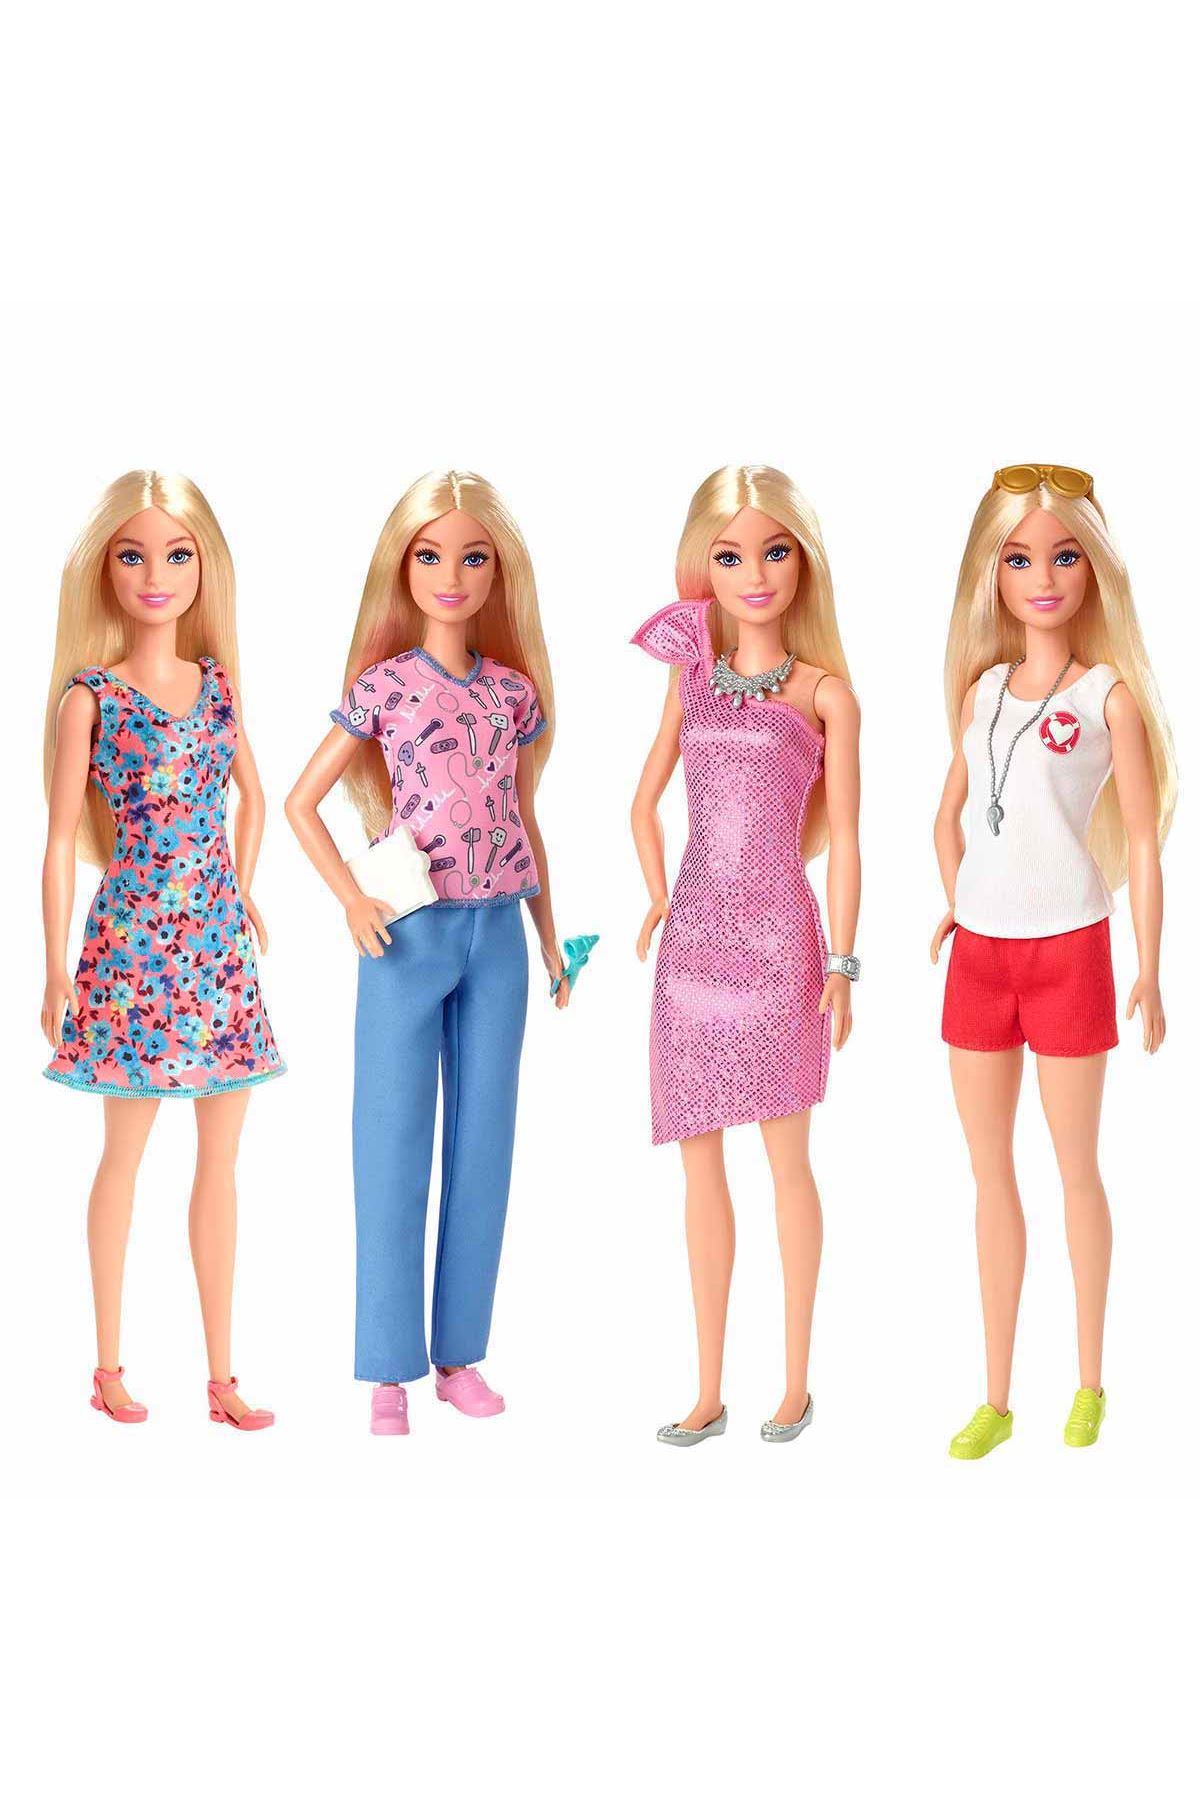 Barbie ve Yeni Rüya Dolabı Oyun Seti